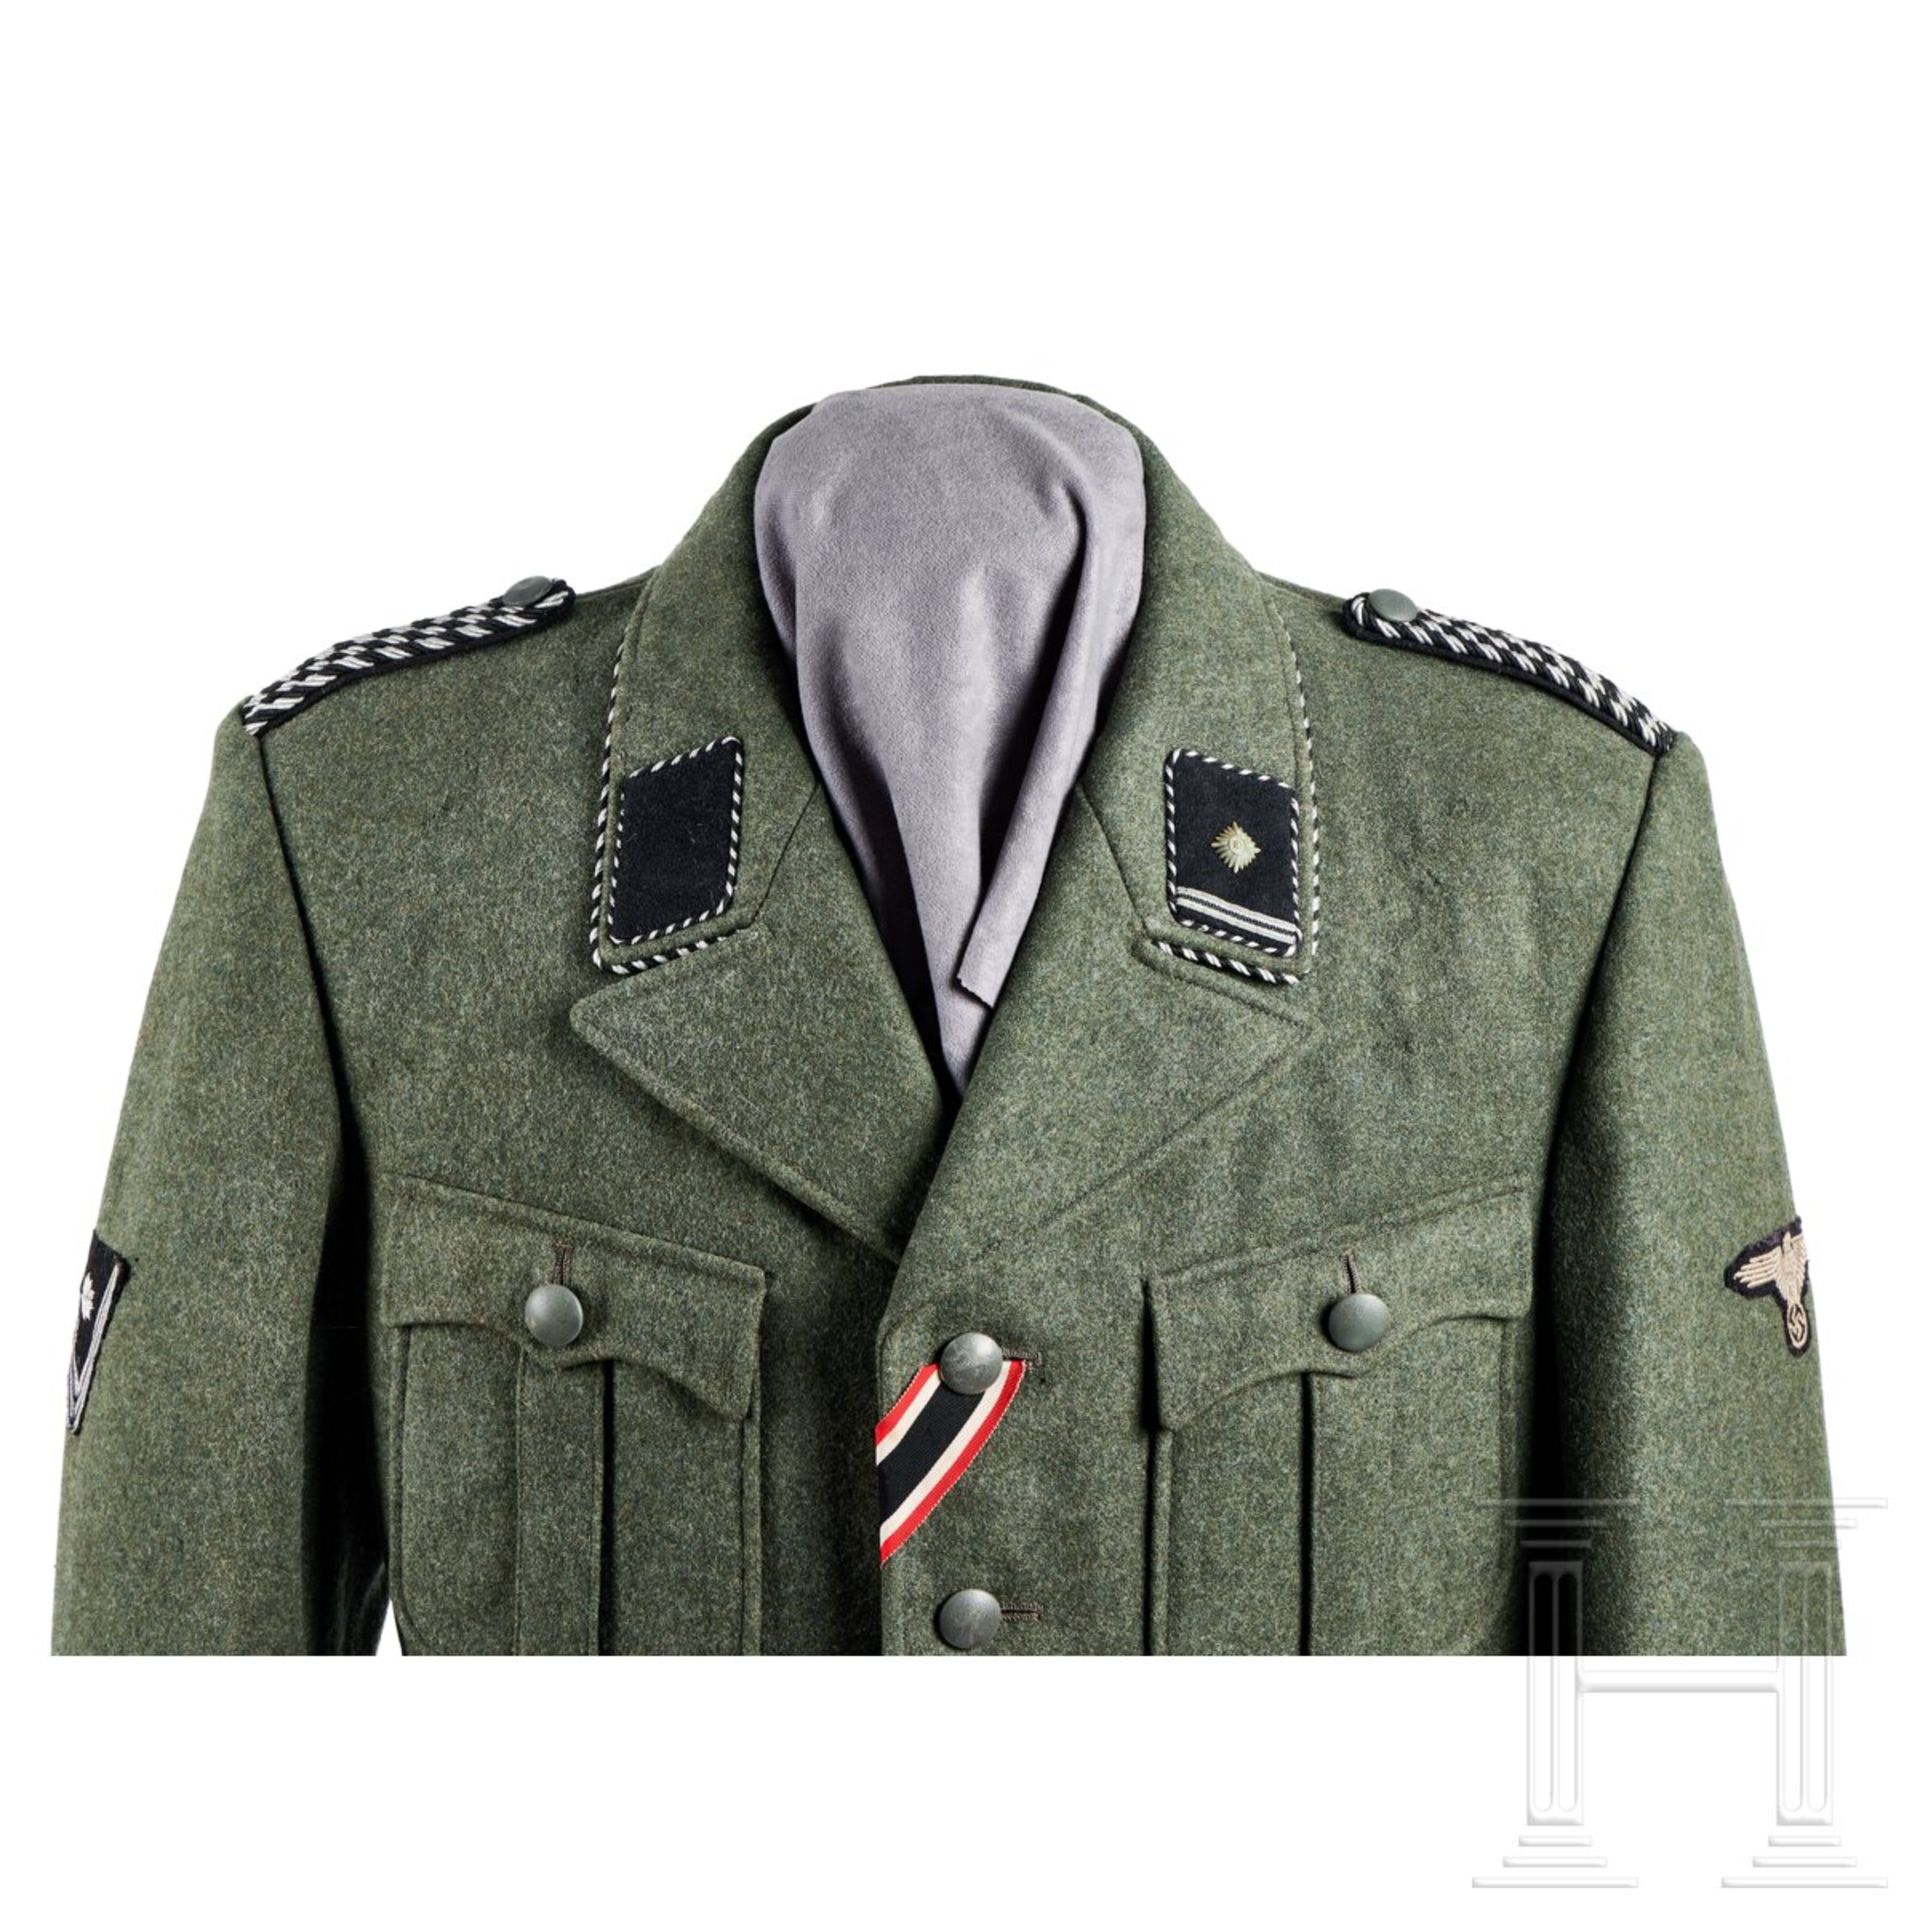 A 1939 Field Grey Service Tunic for a Scharführer of the SD - Bild 3 aus 14